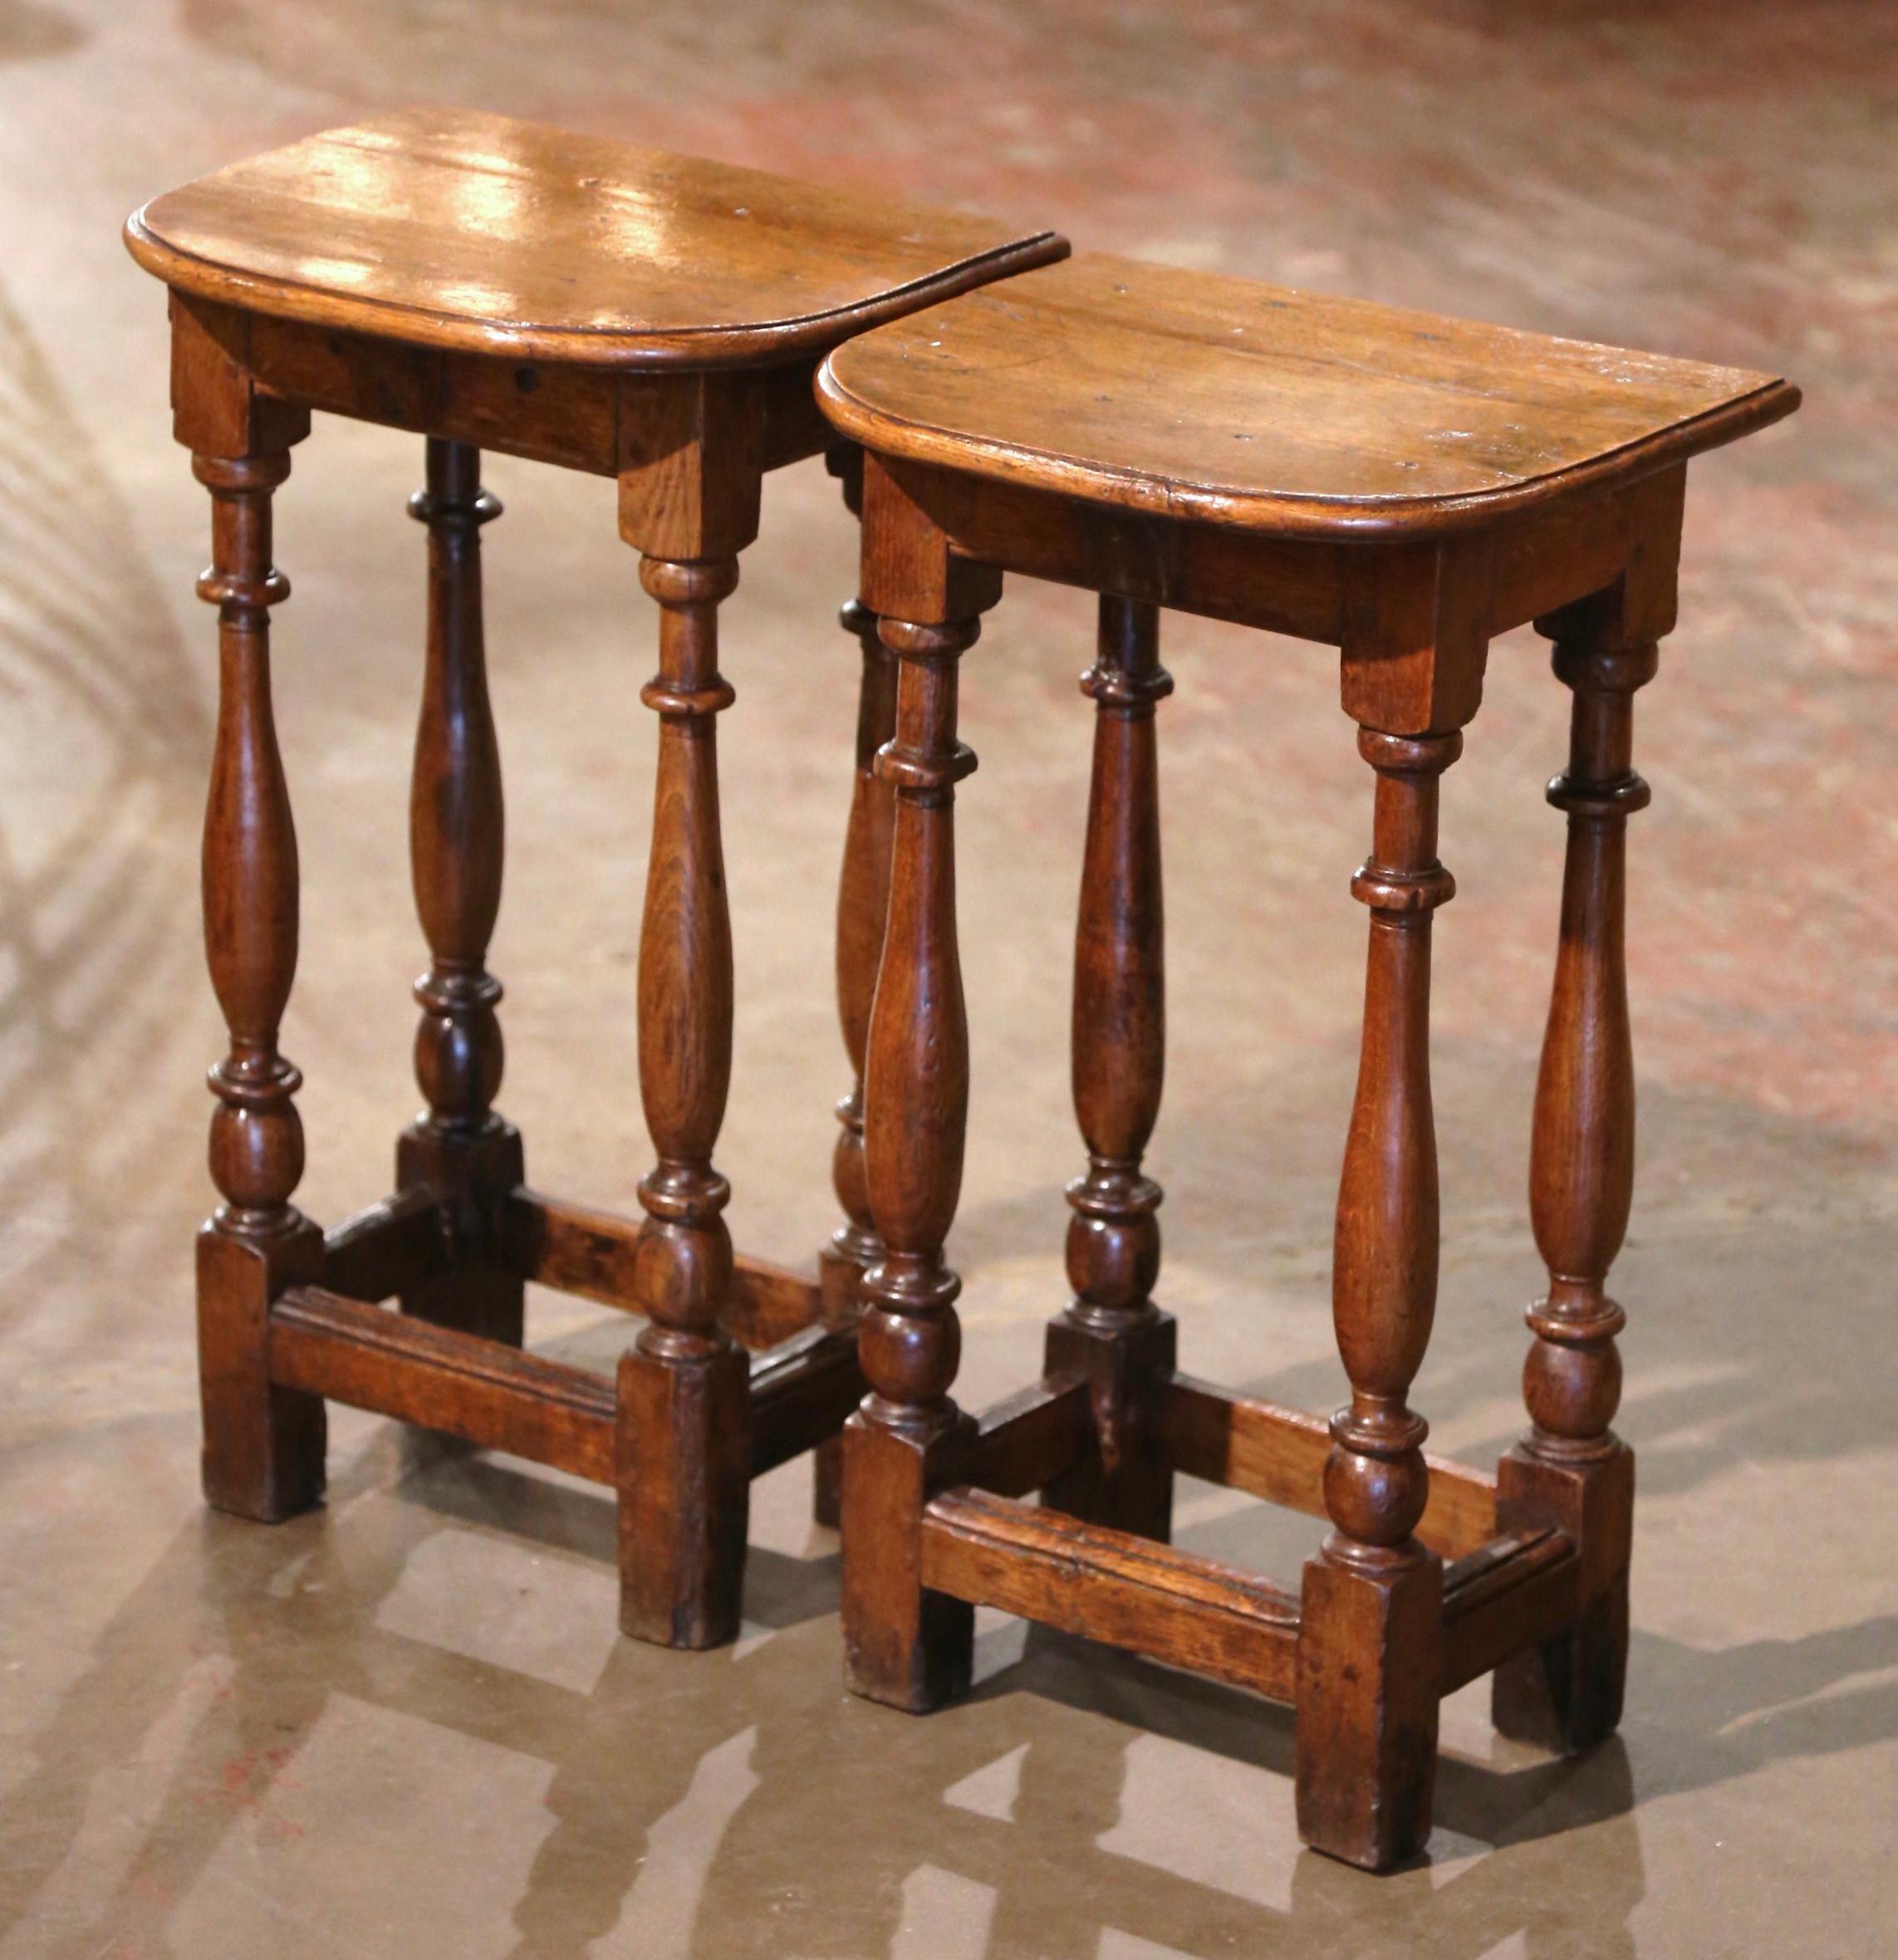 Cette élégante table d'appoint ancienne a été créée en Normandie, en France, vers 1780. Construite en chêne et fixée à l'aide de chevilles, chaque pièce repose sur quatre pieds tournés reliés par un solide châssis à la base. La surface supérieure